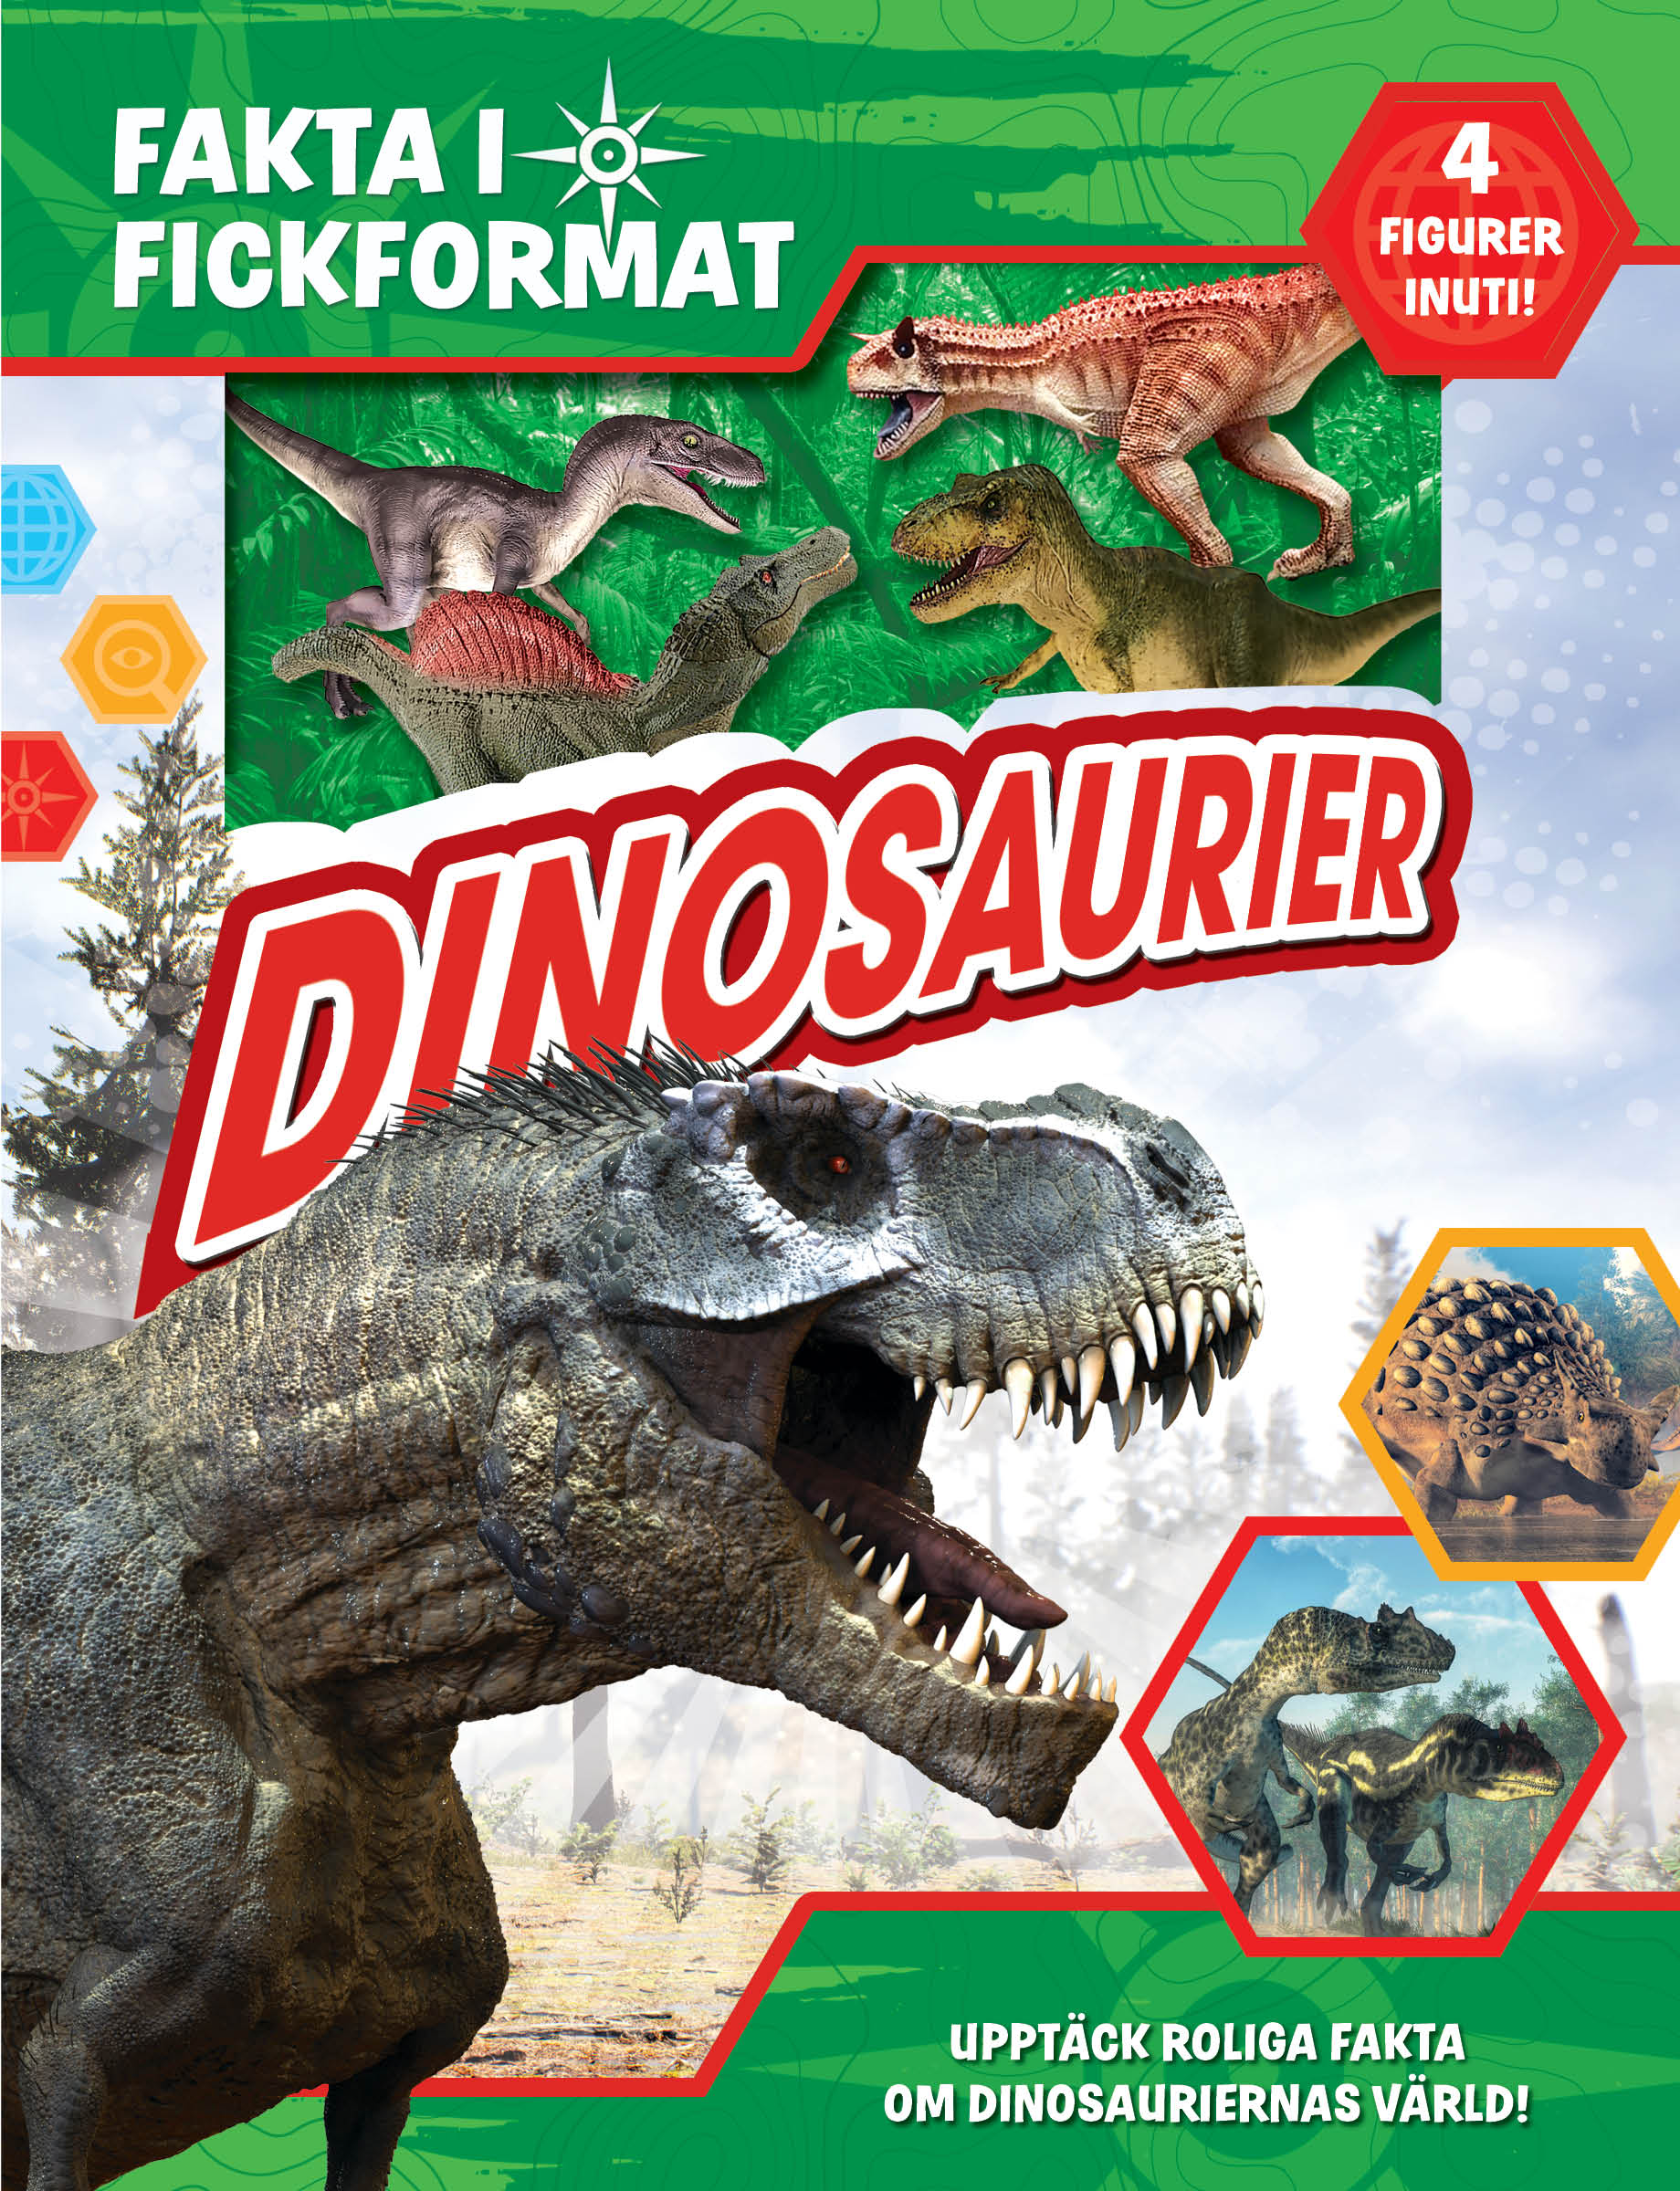 Fakta i fickformat - Dinosaurier